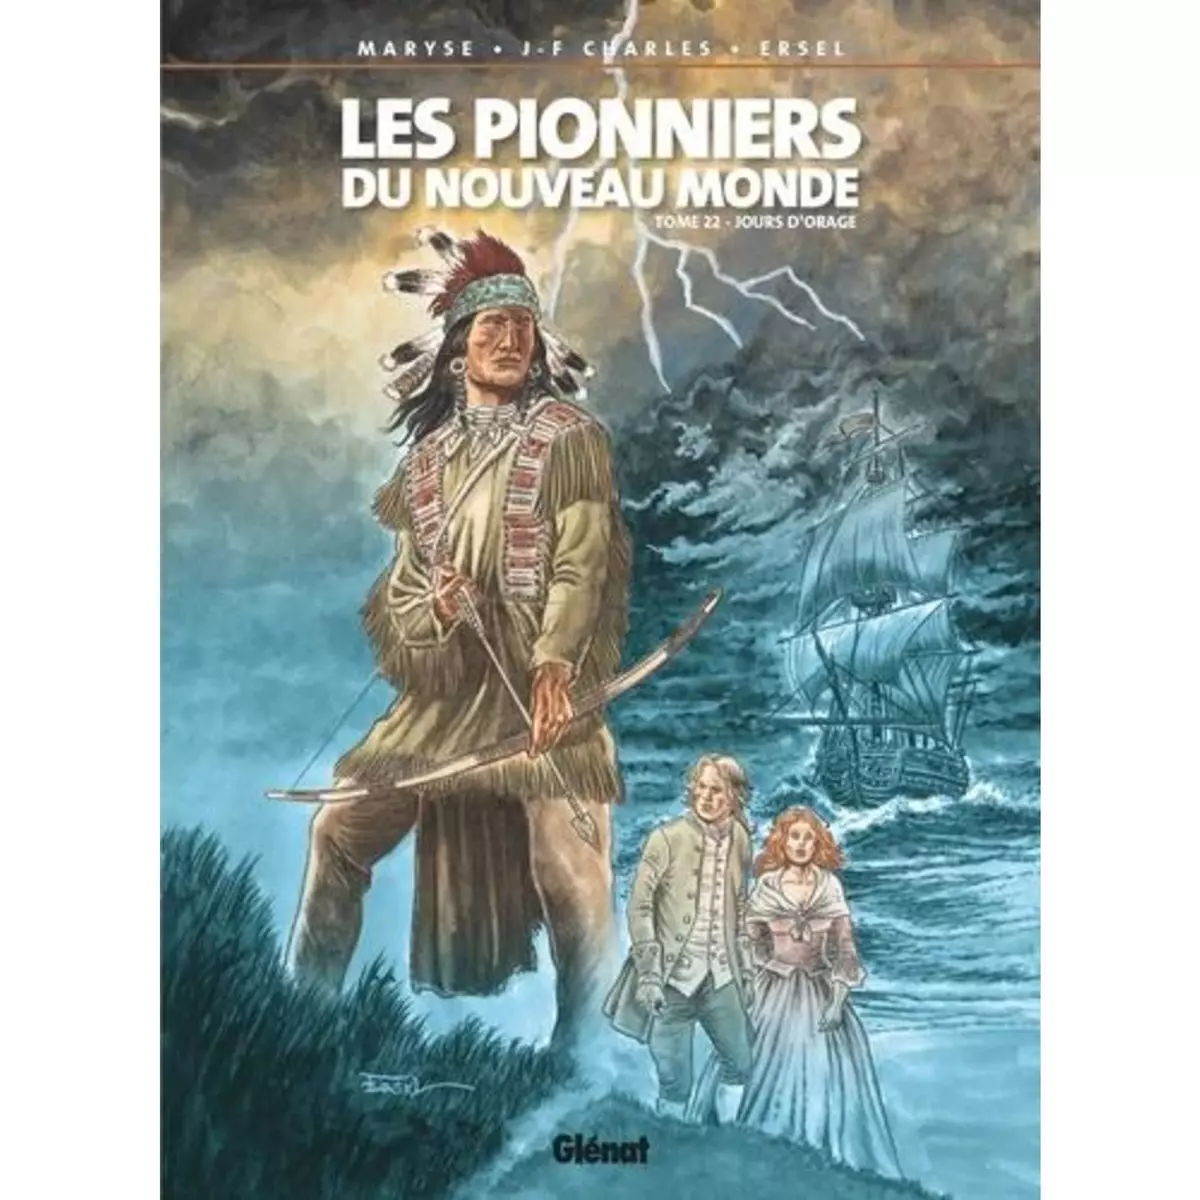  LES PIONNIERS DU NOUVEAU MONDE TOME 22 : JOURS D'ORAGE, Charles Maryse